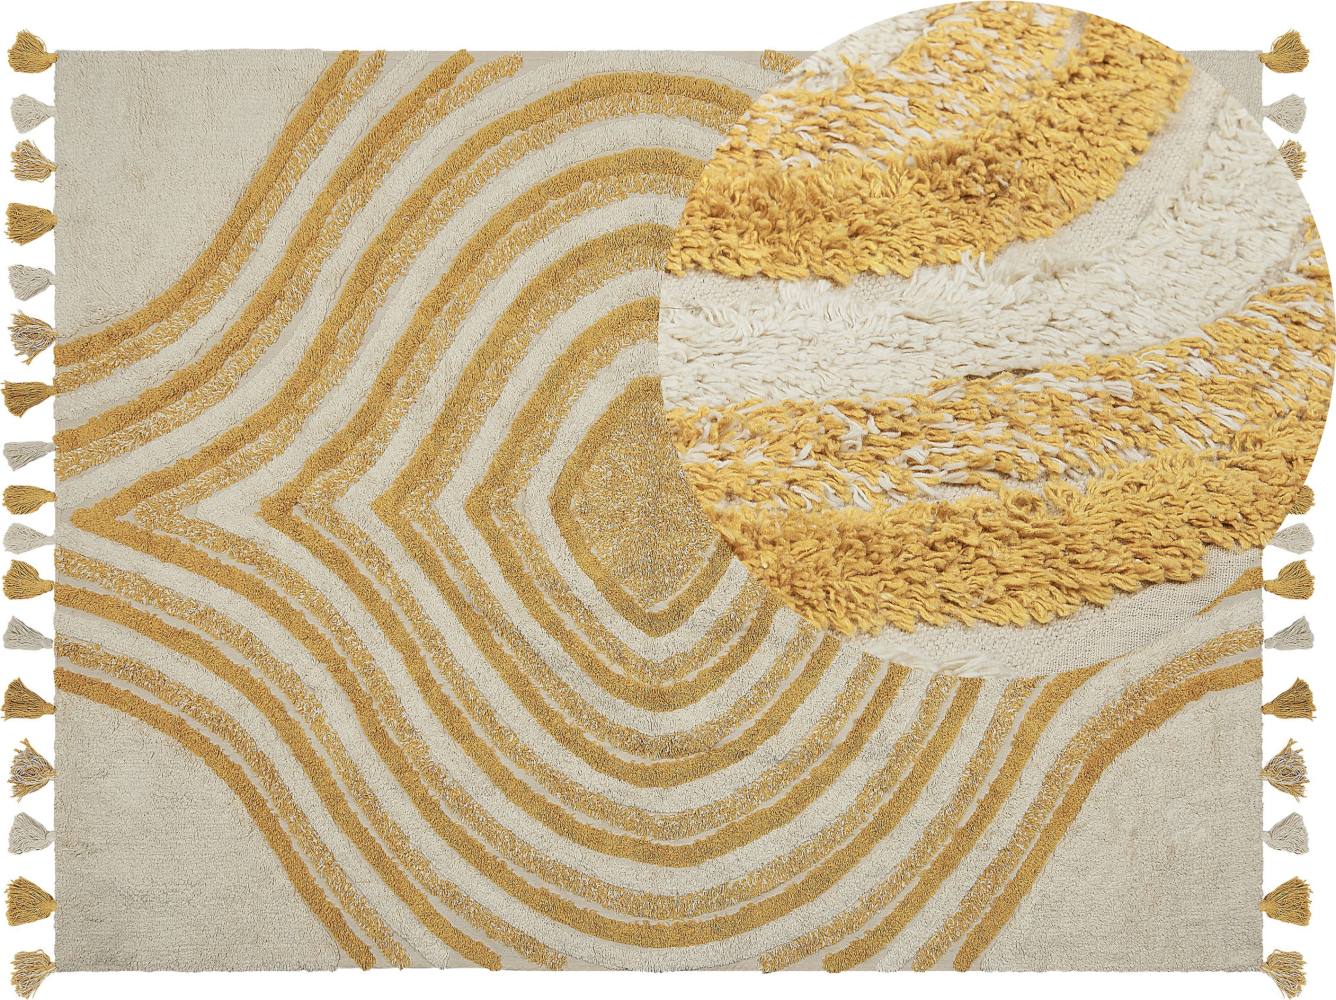 Teppich Baumwolle beige gelb 160 x 230 cm abstraktes Muster BINGOL Bild 1